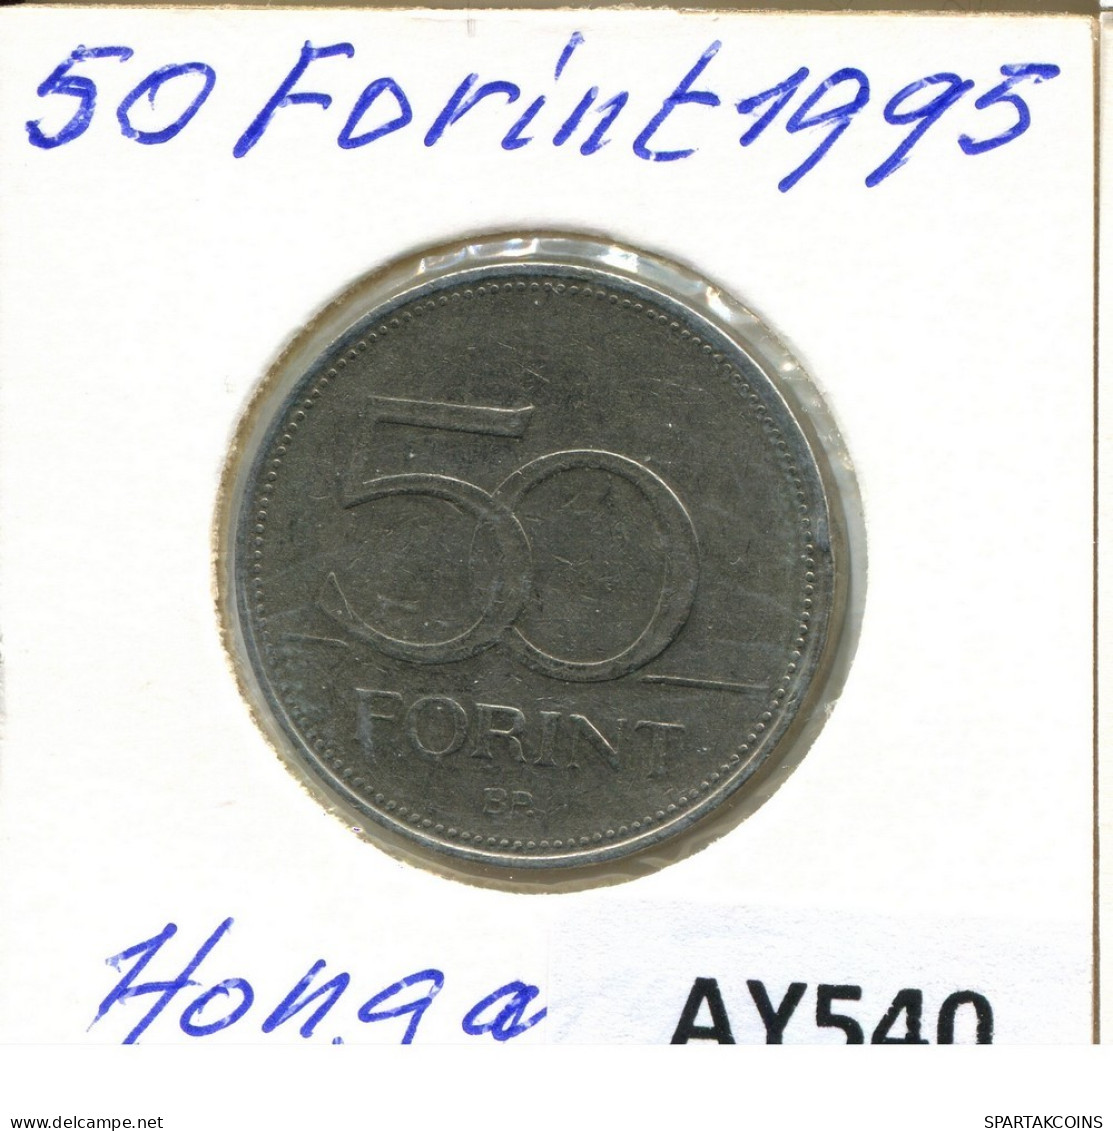 50 FORINT 1995 SIEBENBÜRGEN HUNGARY Münze #AY540.D.A - Hongrie